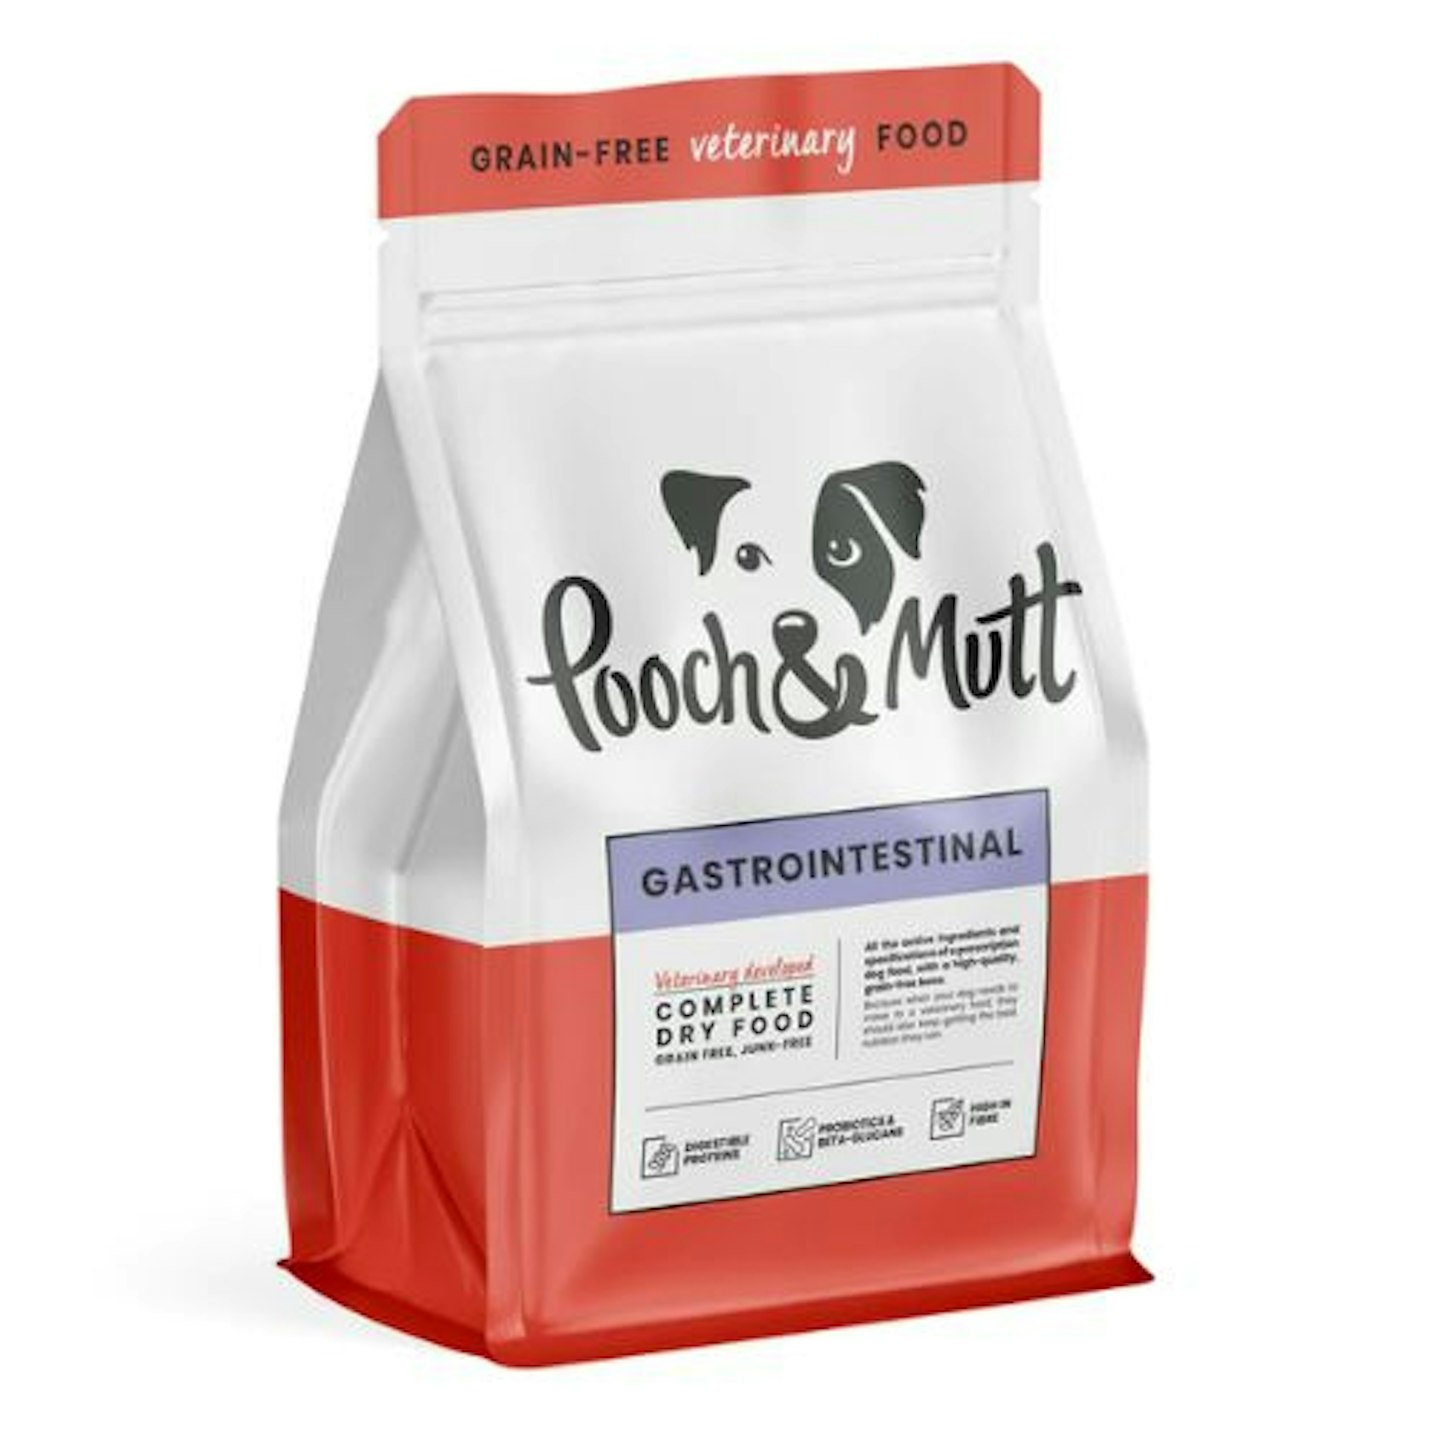 Pooch + Mutt Gastrointestinal Dry Dog Food